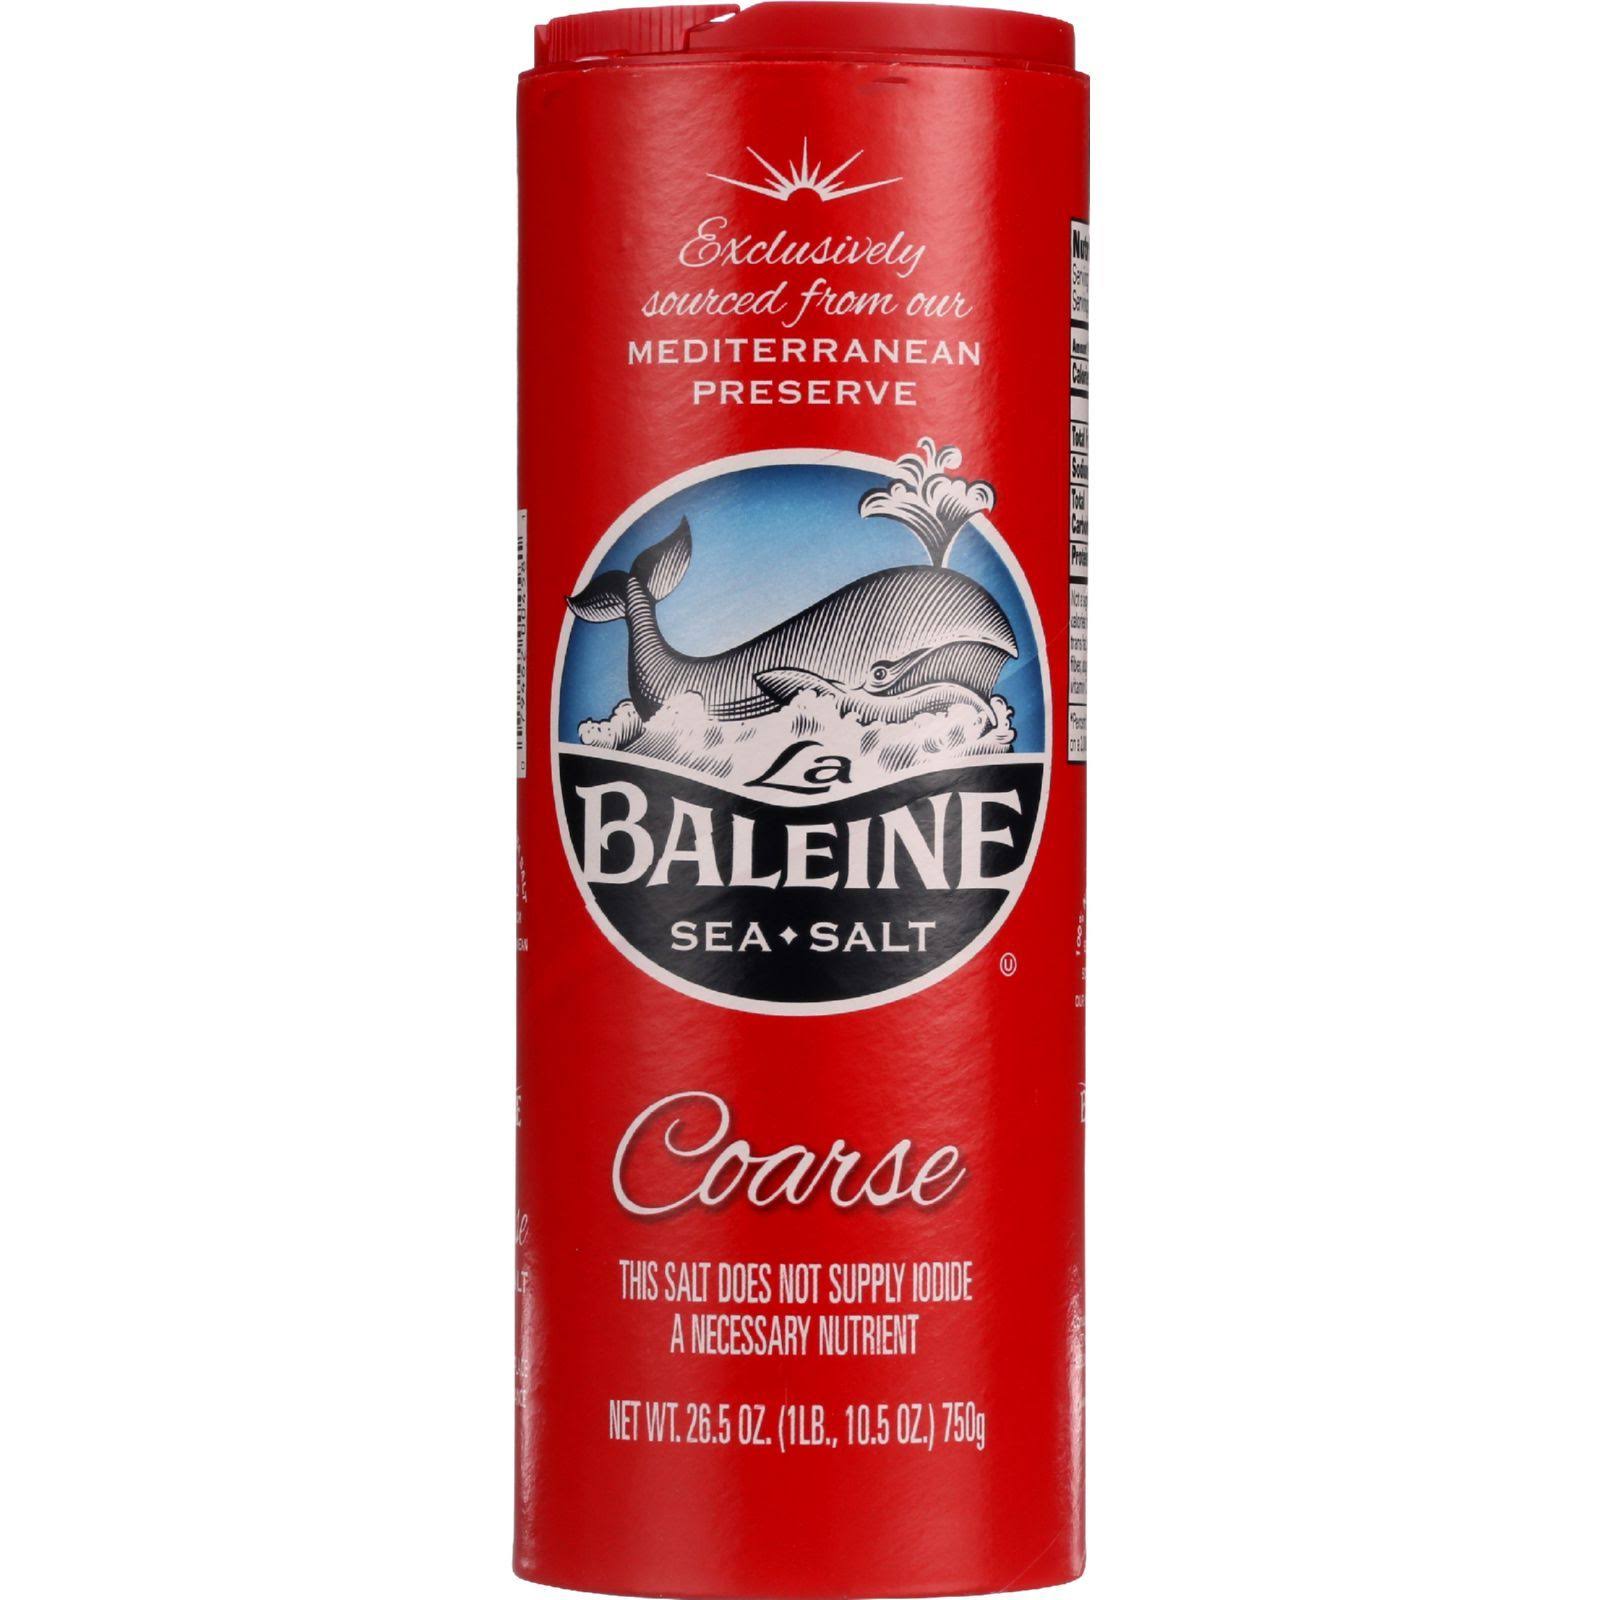 La Baleine Sea Salt - Coarse Crystal, 26.5oz